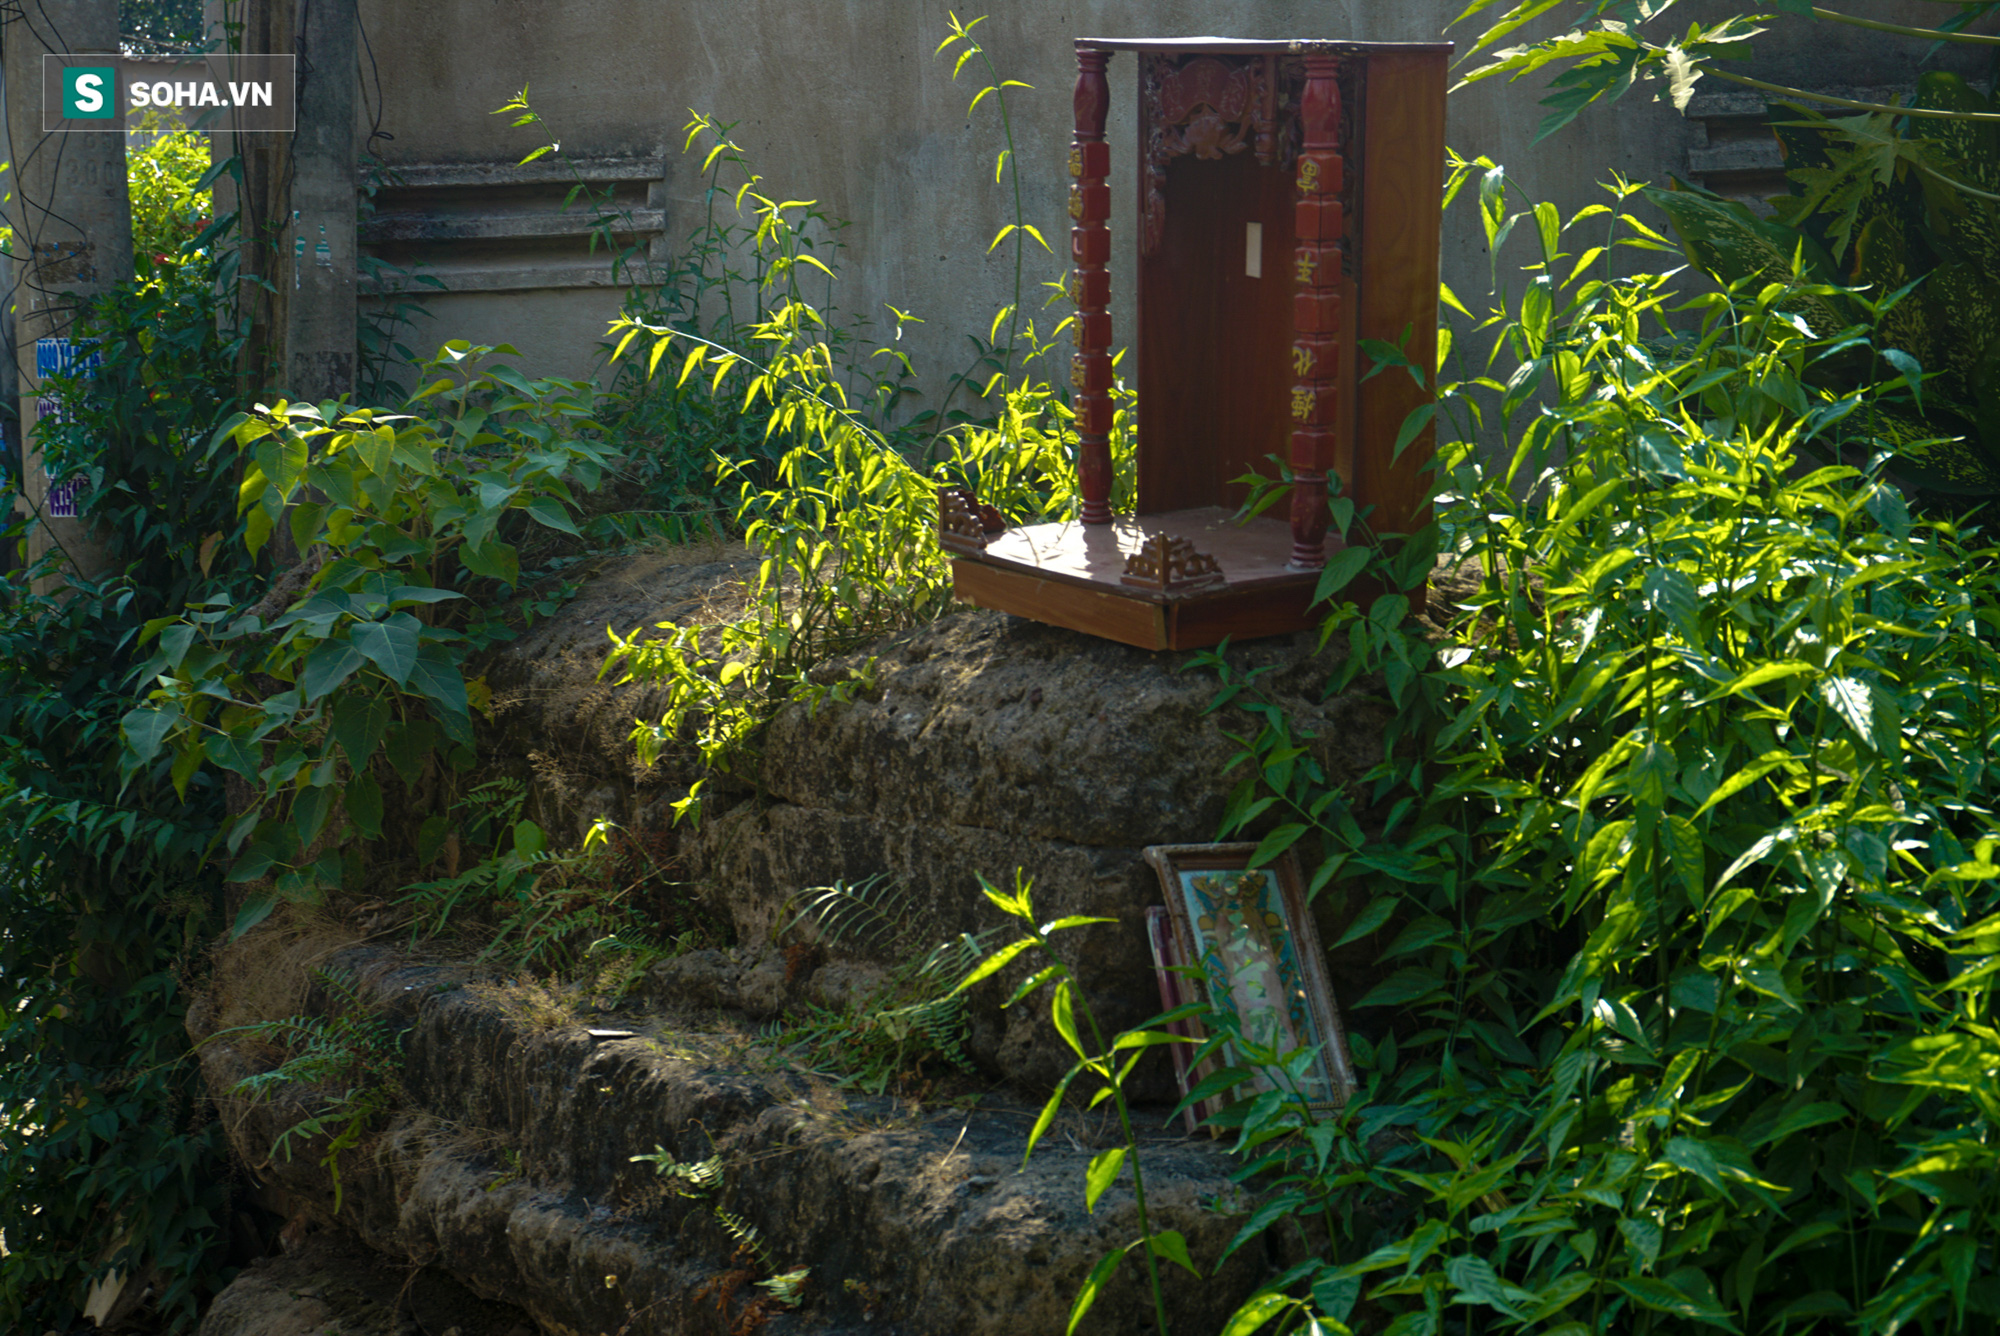 Bí ẩn mộ yểm tại nơi yên nghỉ của người 3 lần từ chối chức bộ trưởng của vua Minh Mạng - Ảnh 4.